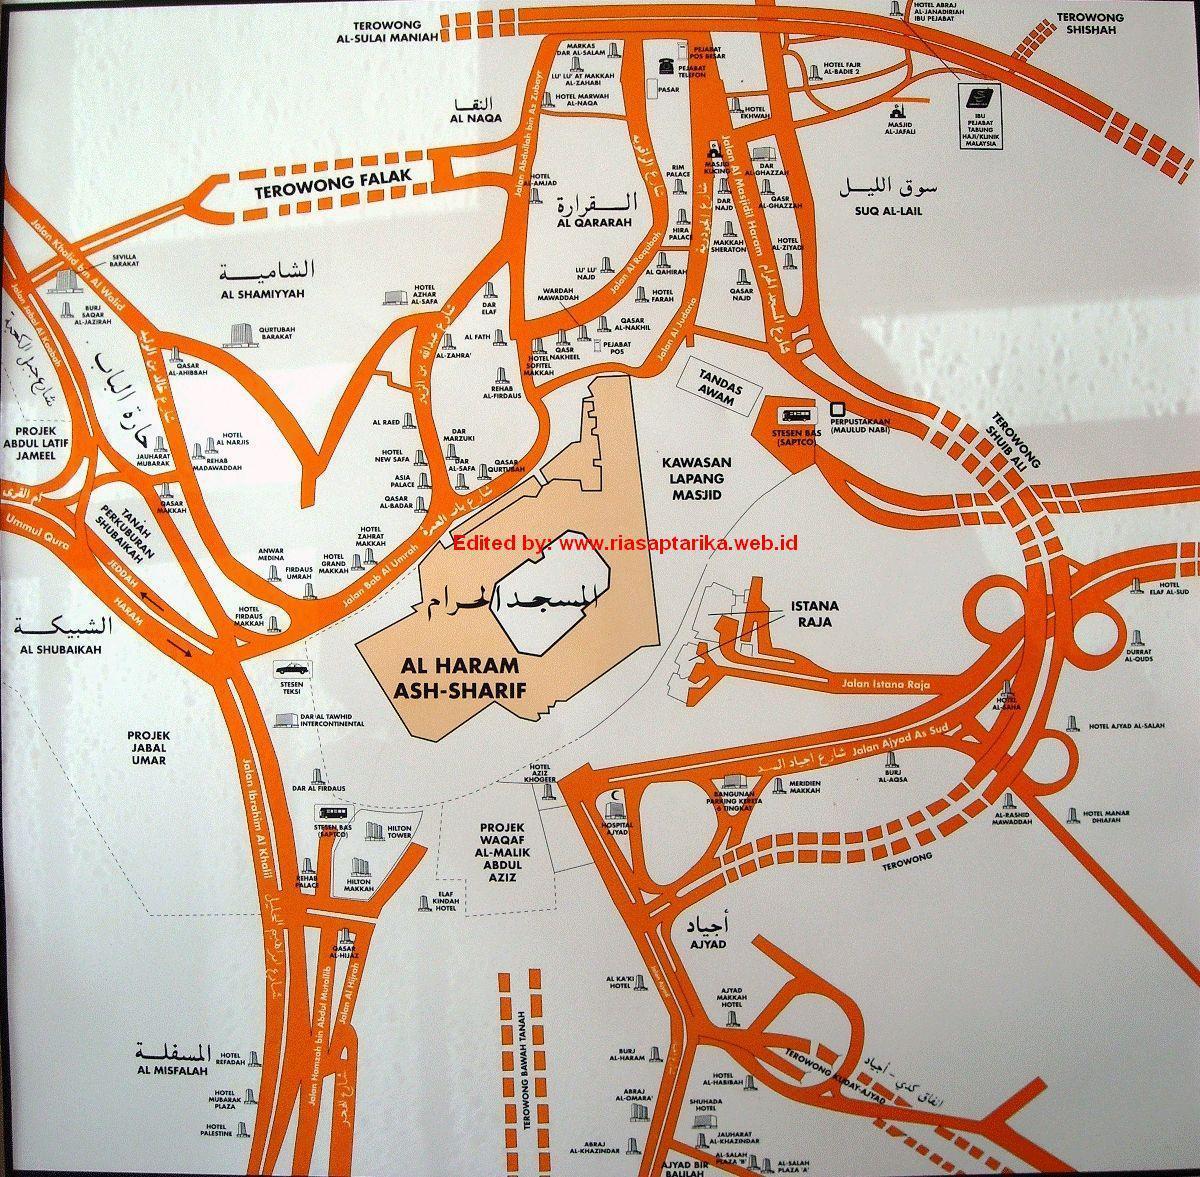 नक्शे के misfalah मक्का नक्शा